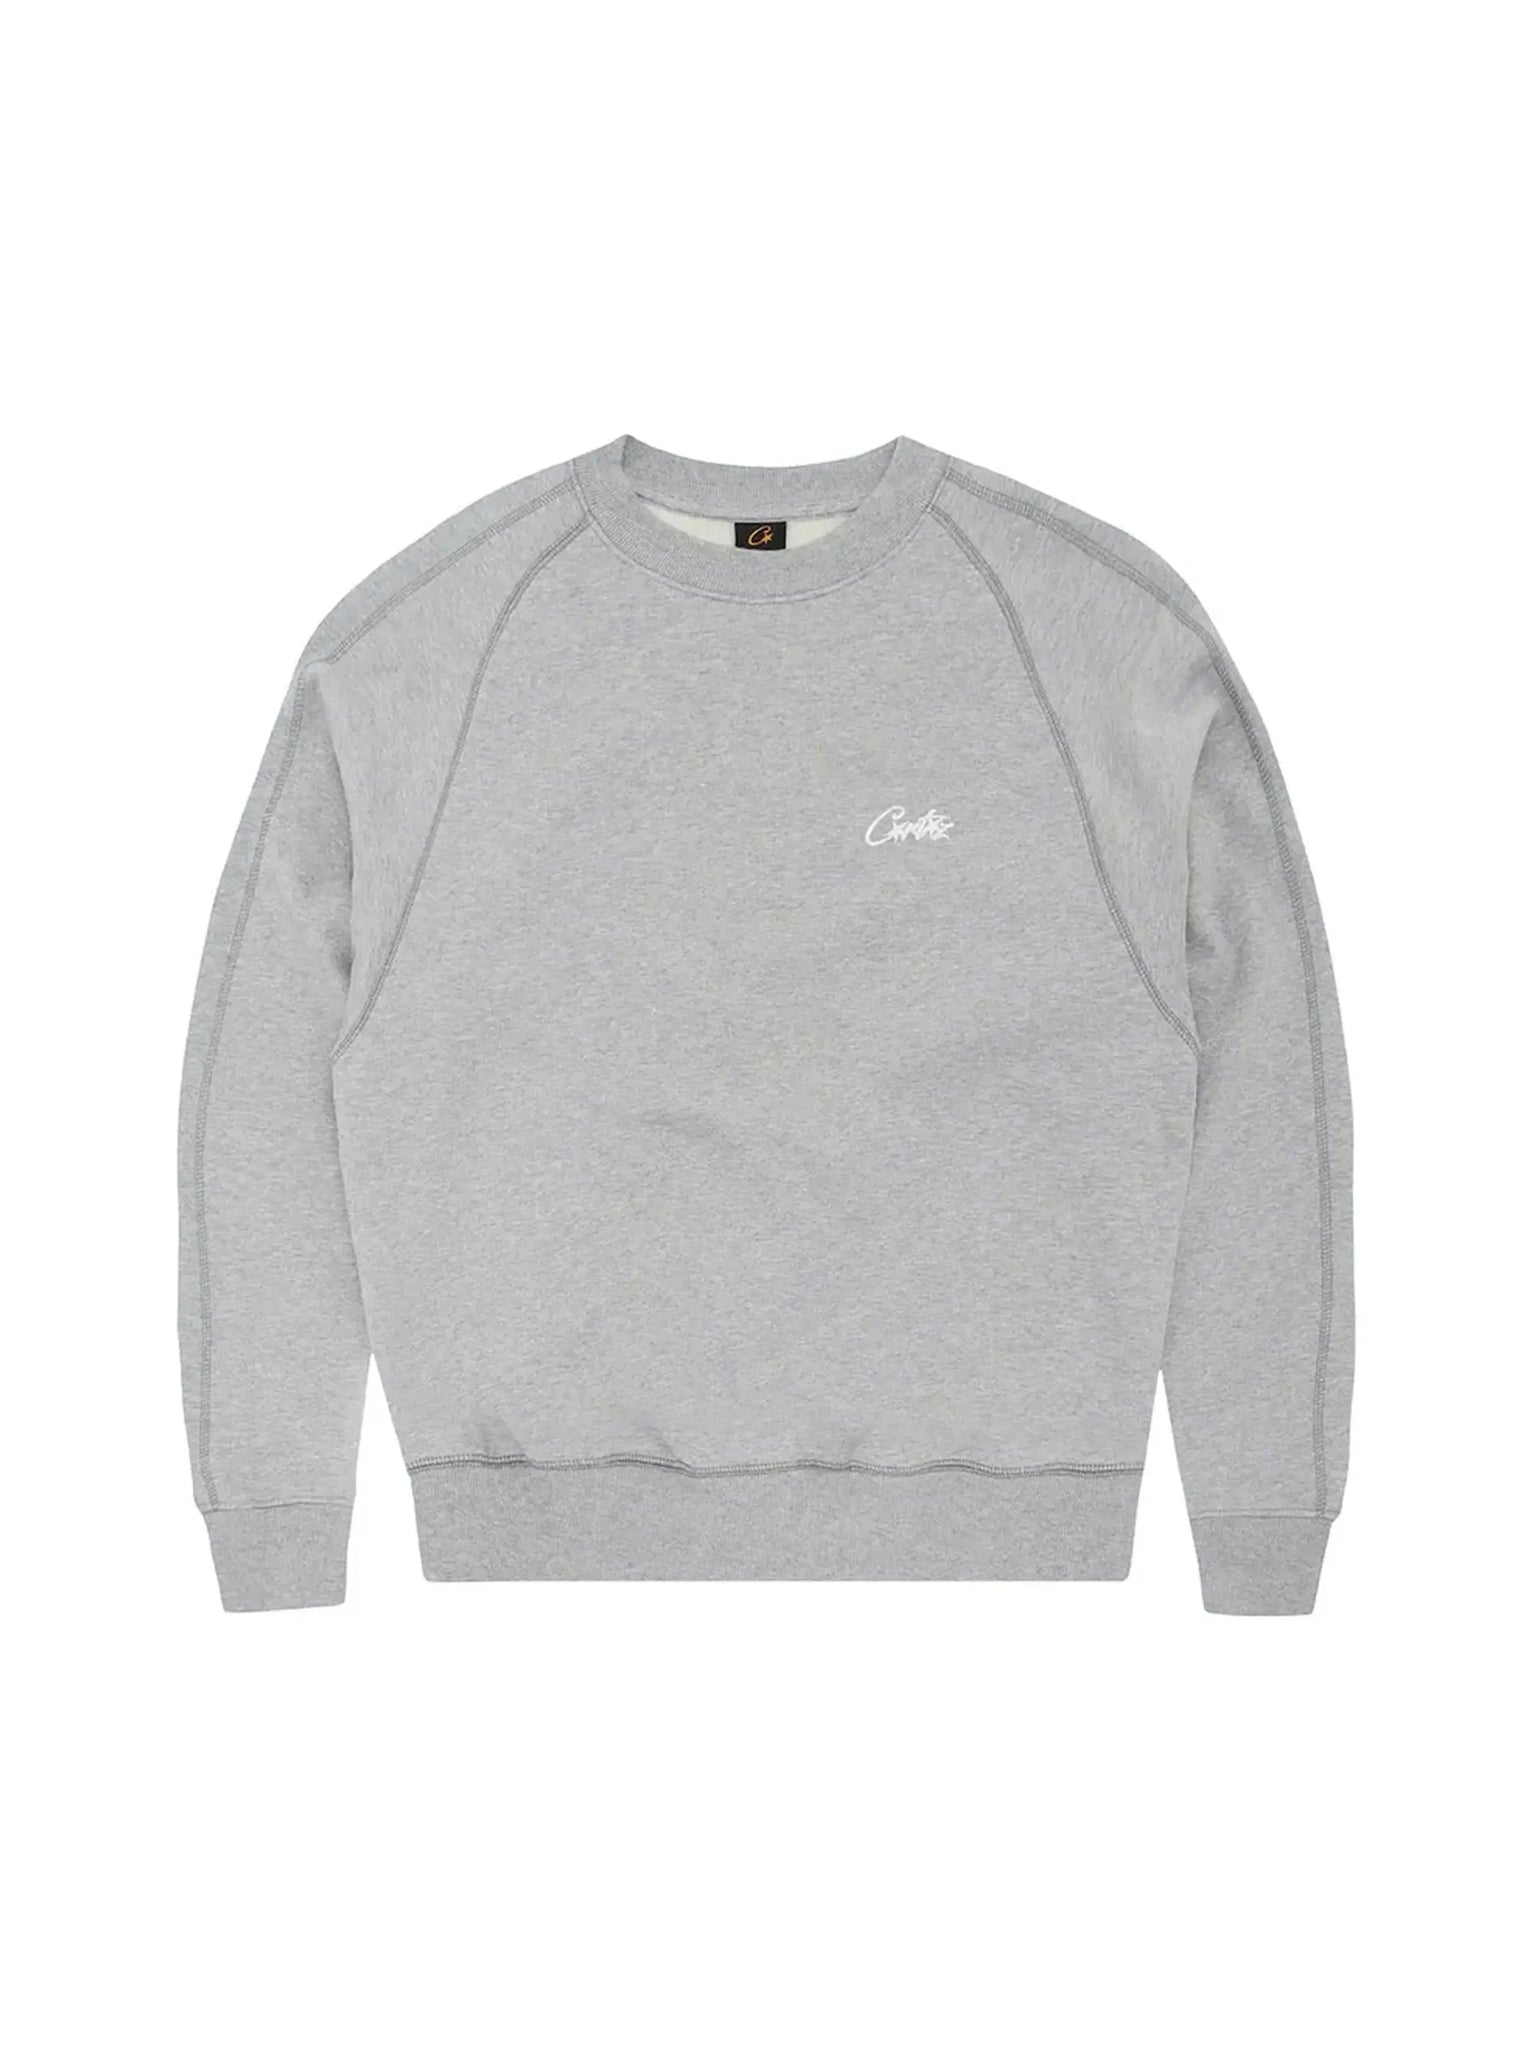 Corteiz HMP V2 Sweatshirt Grey in Auckland, New Zealand - Shop name